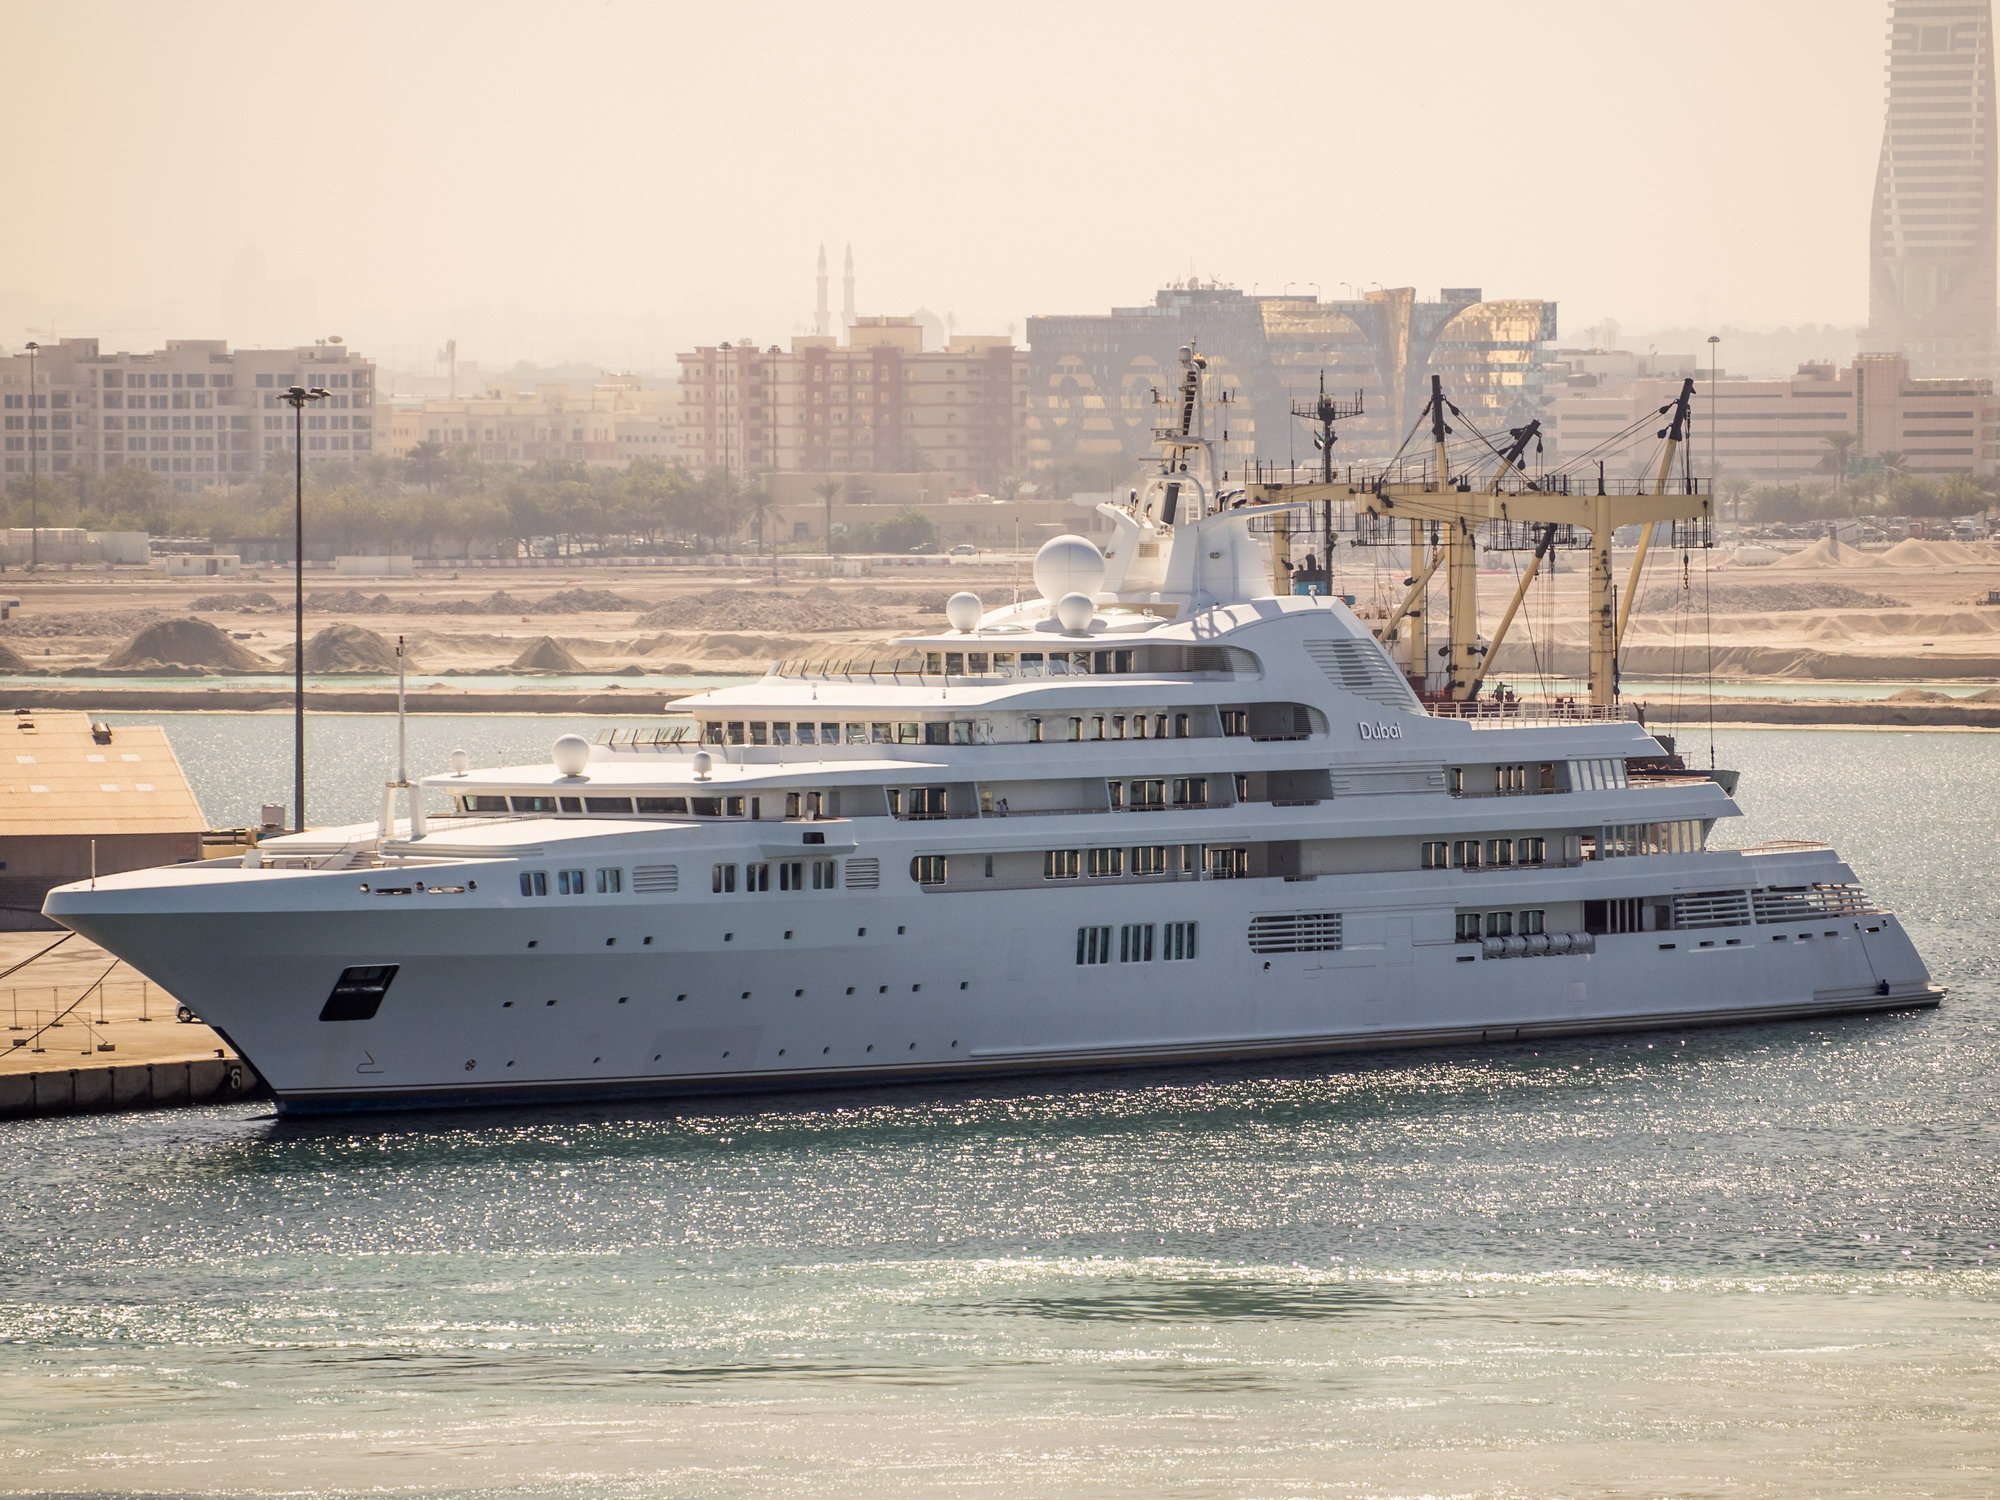 DUBAI Yacht • Sheikh Mohmmed's $500M Superyacht • Platinum Yachts • 2006